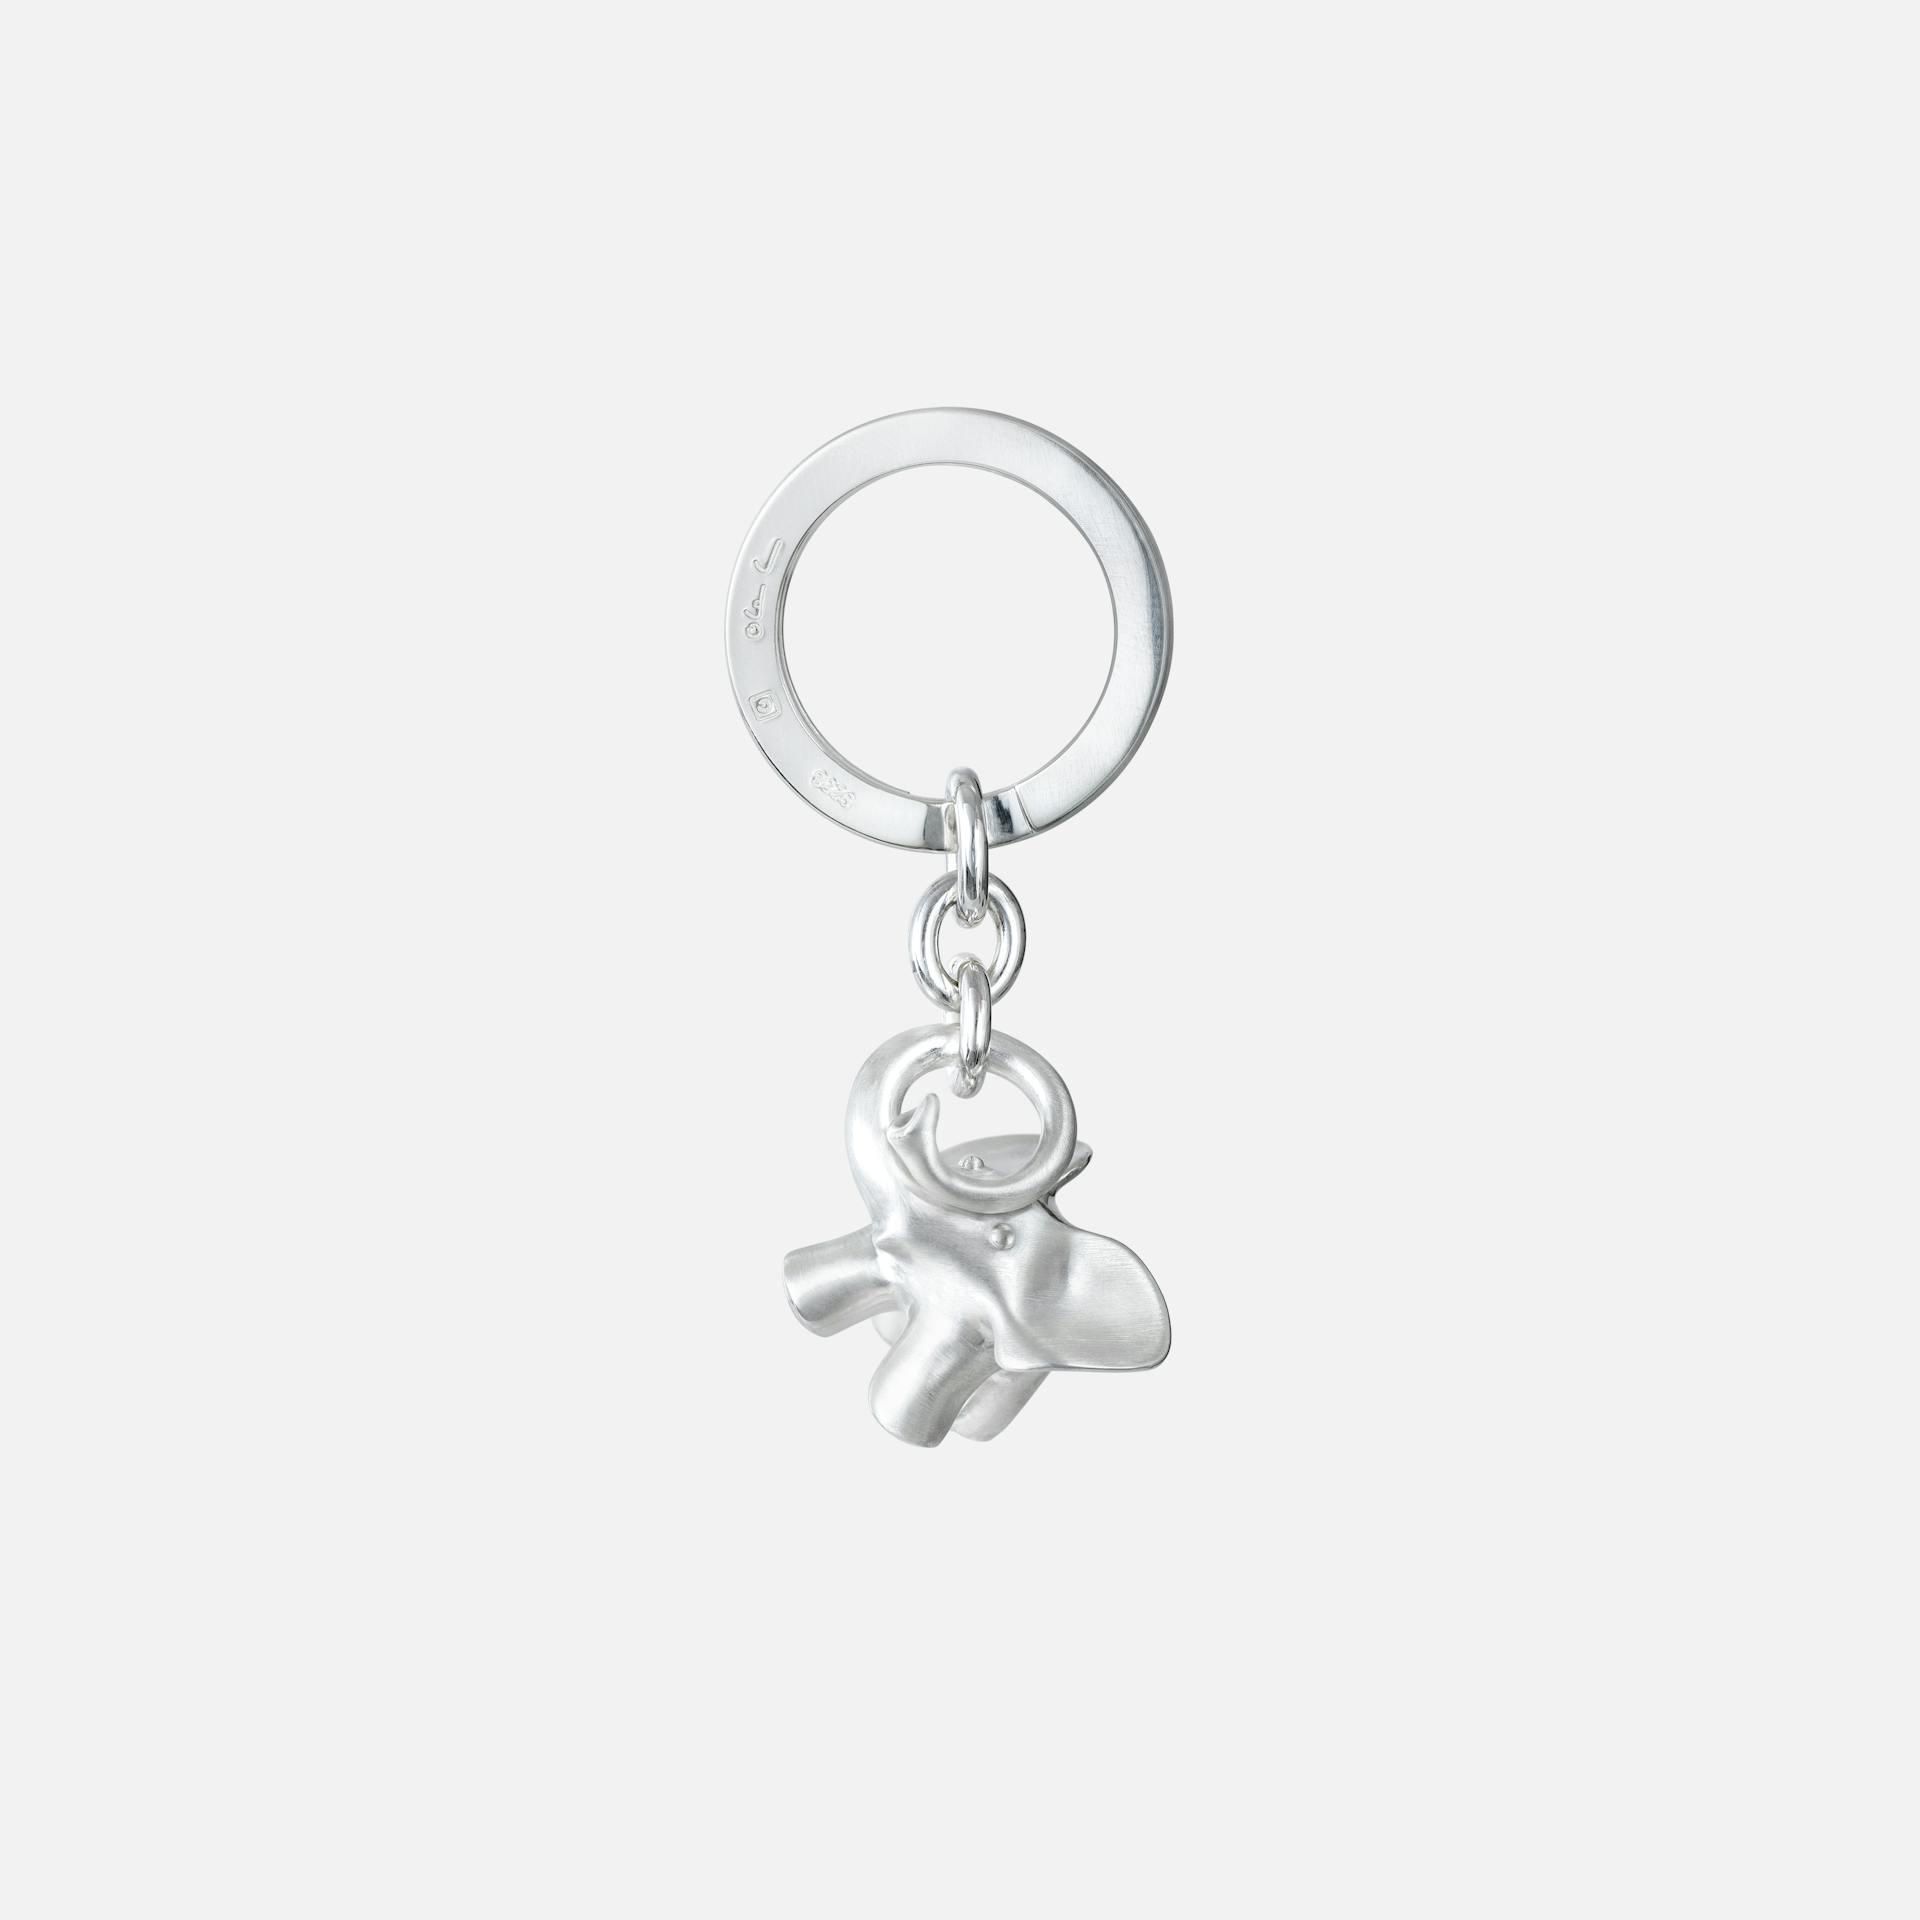 Elephant key ring	